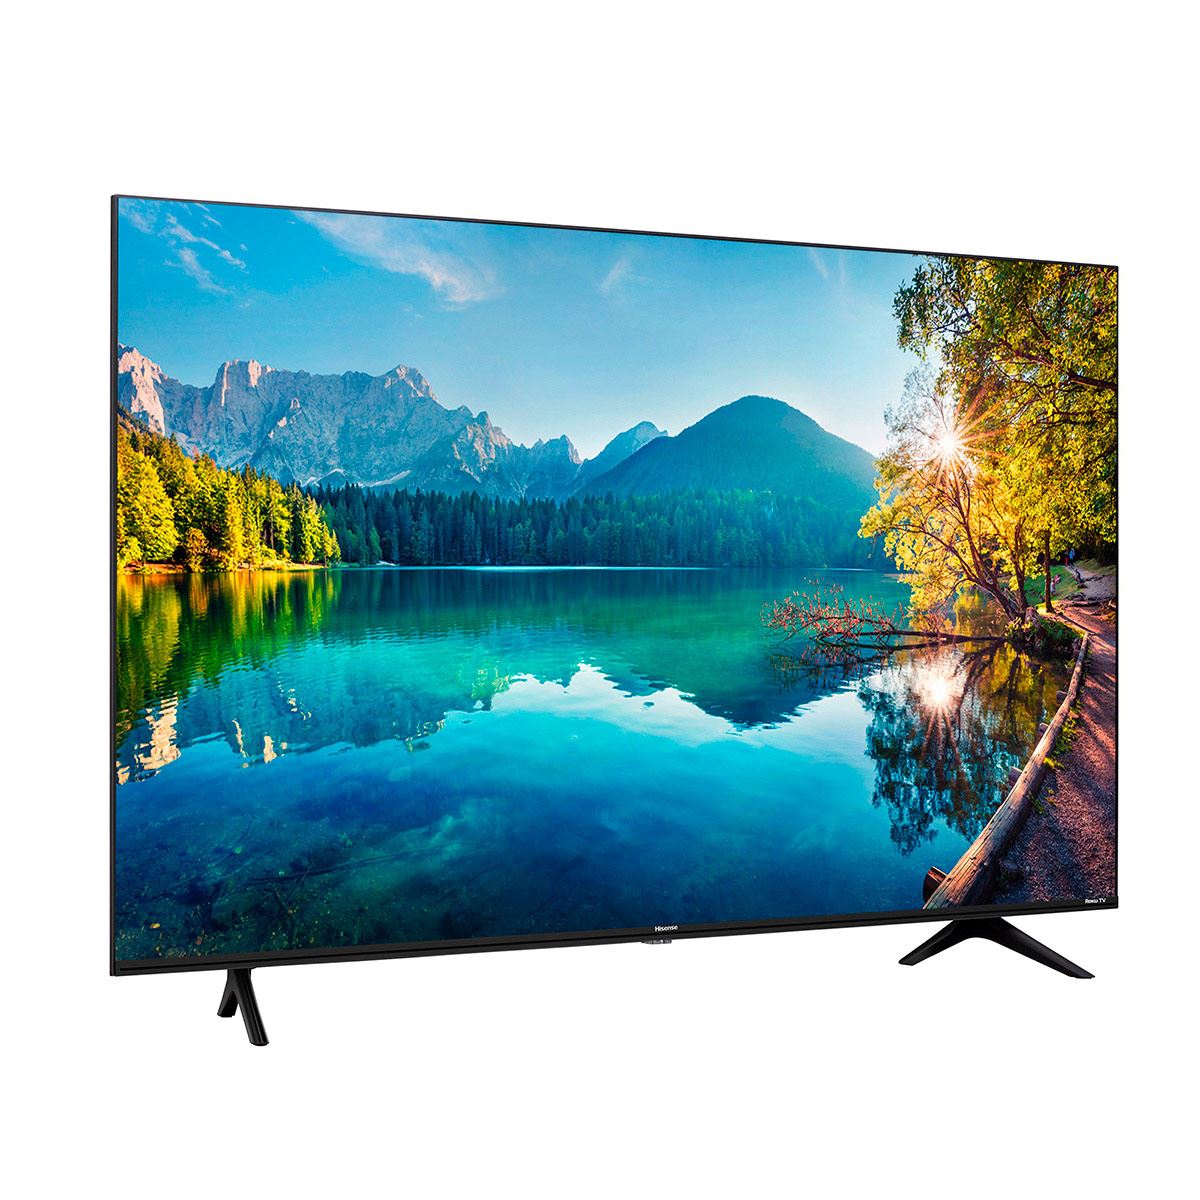 Smart TV HISENSE 55 pulgadas 55R6000GM 4K UHD ROKU LED